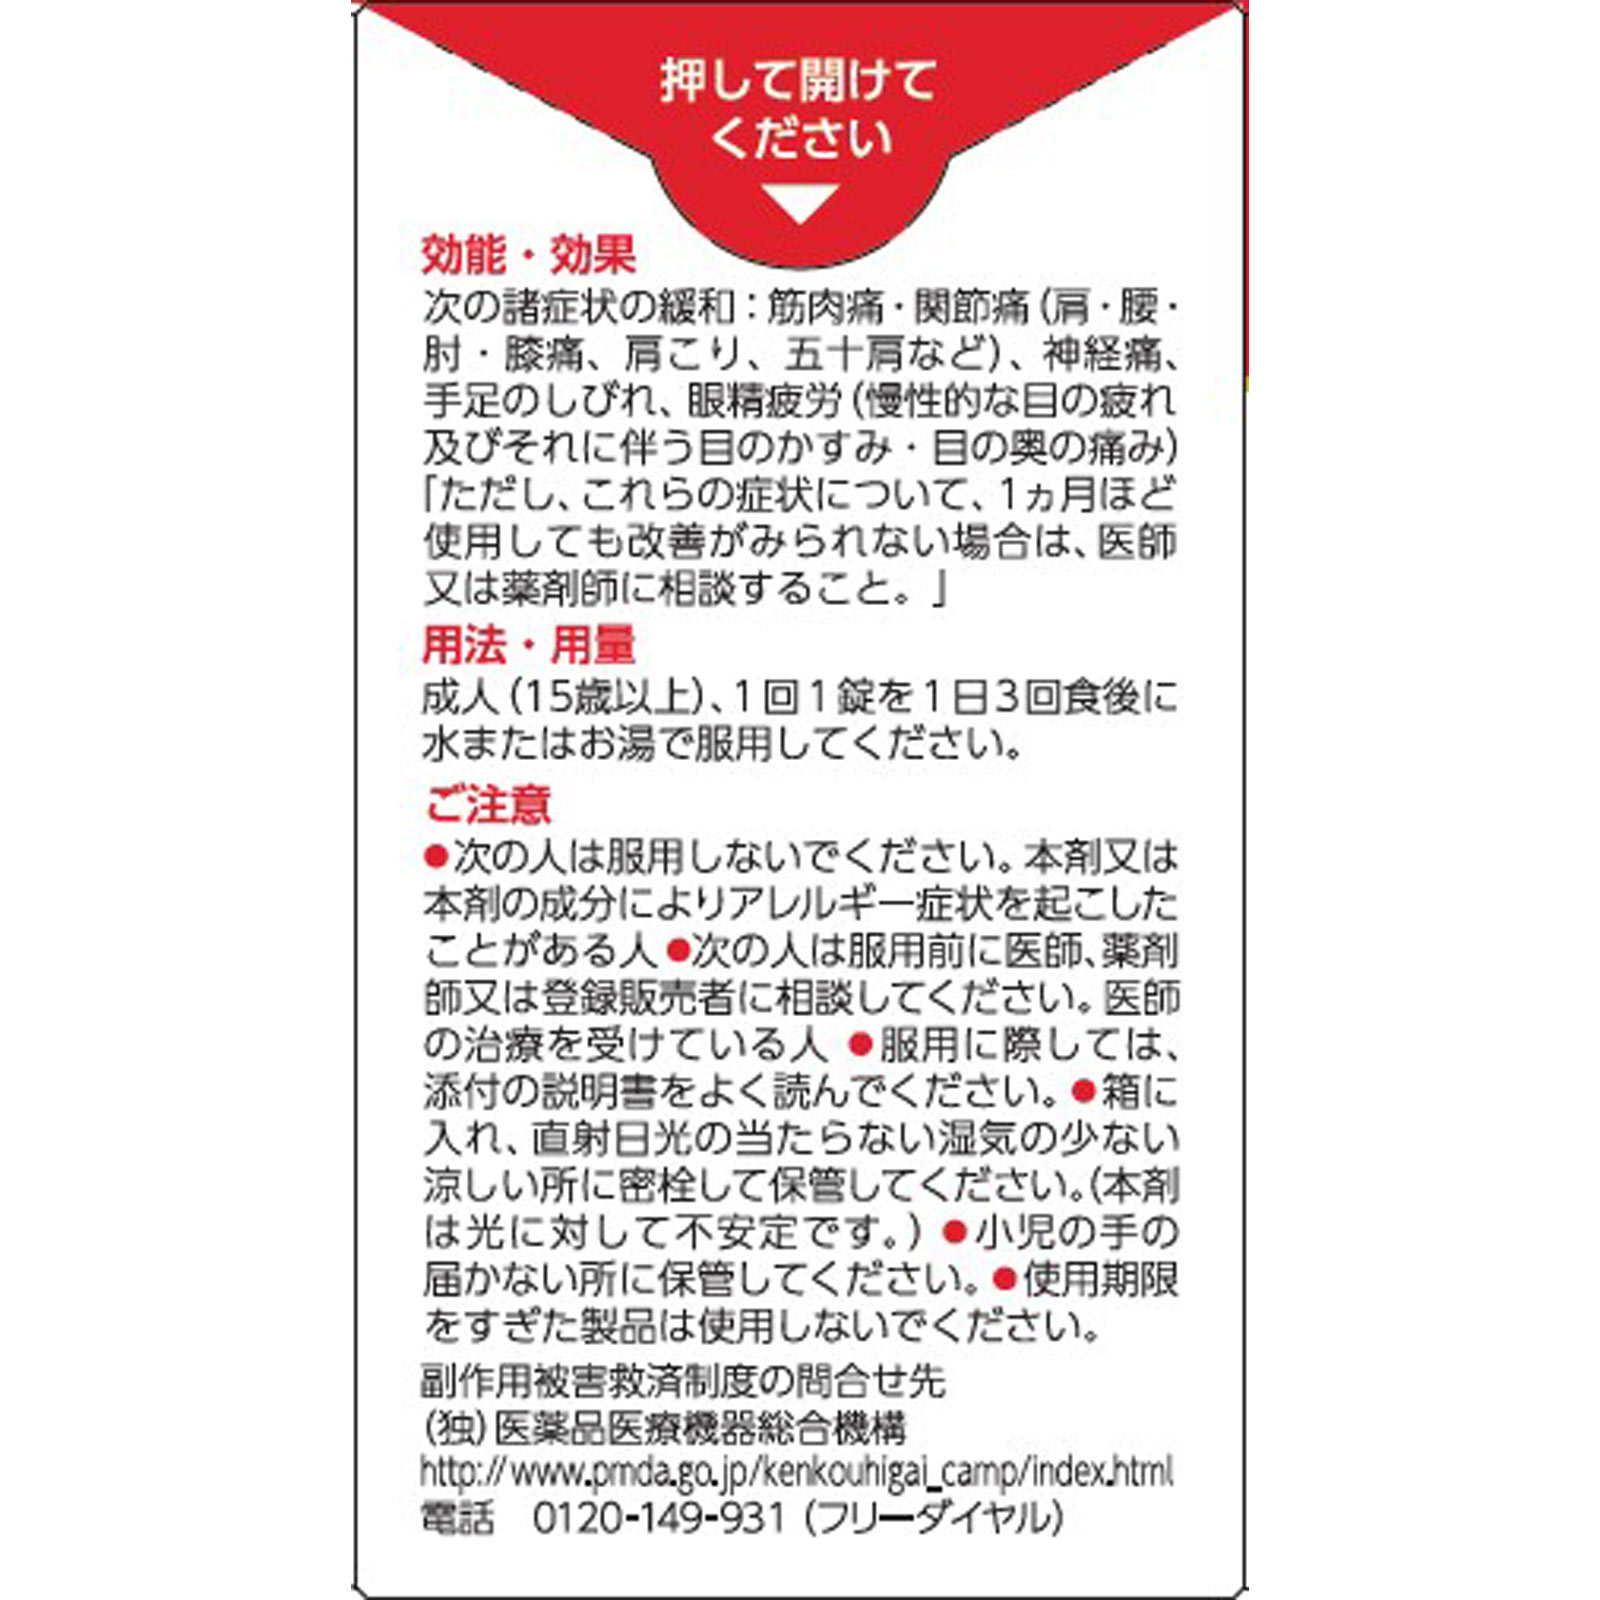 ☆ナボリンＳ 40錠 【第三類医薬品】: 医薬品・衛生用品 Tomod's ONLINE SHOP